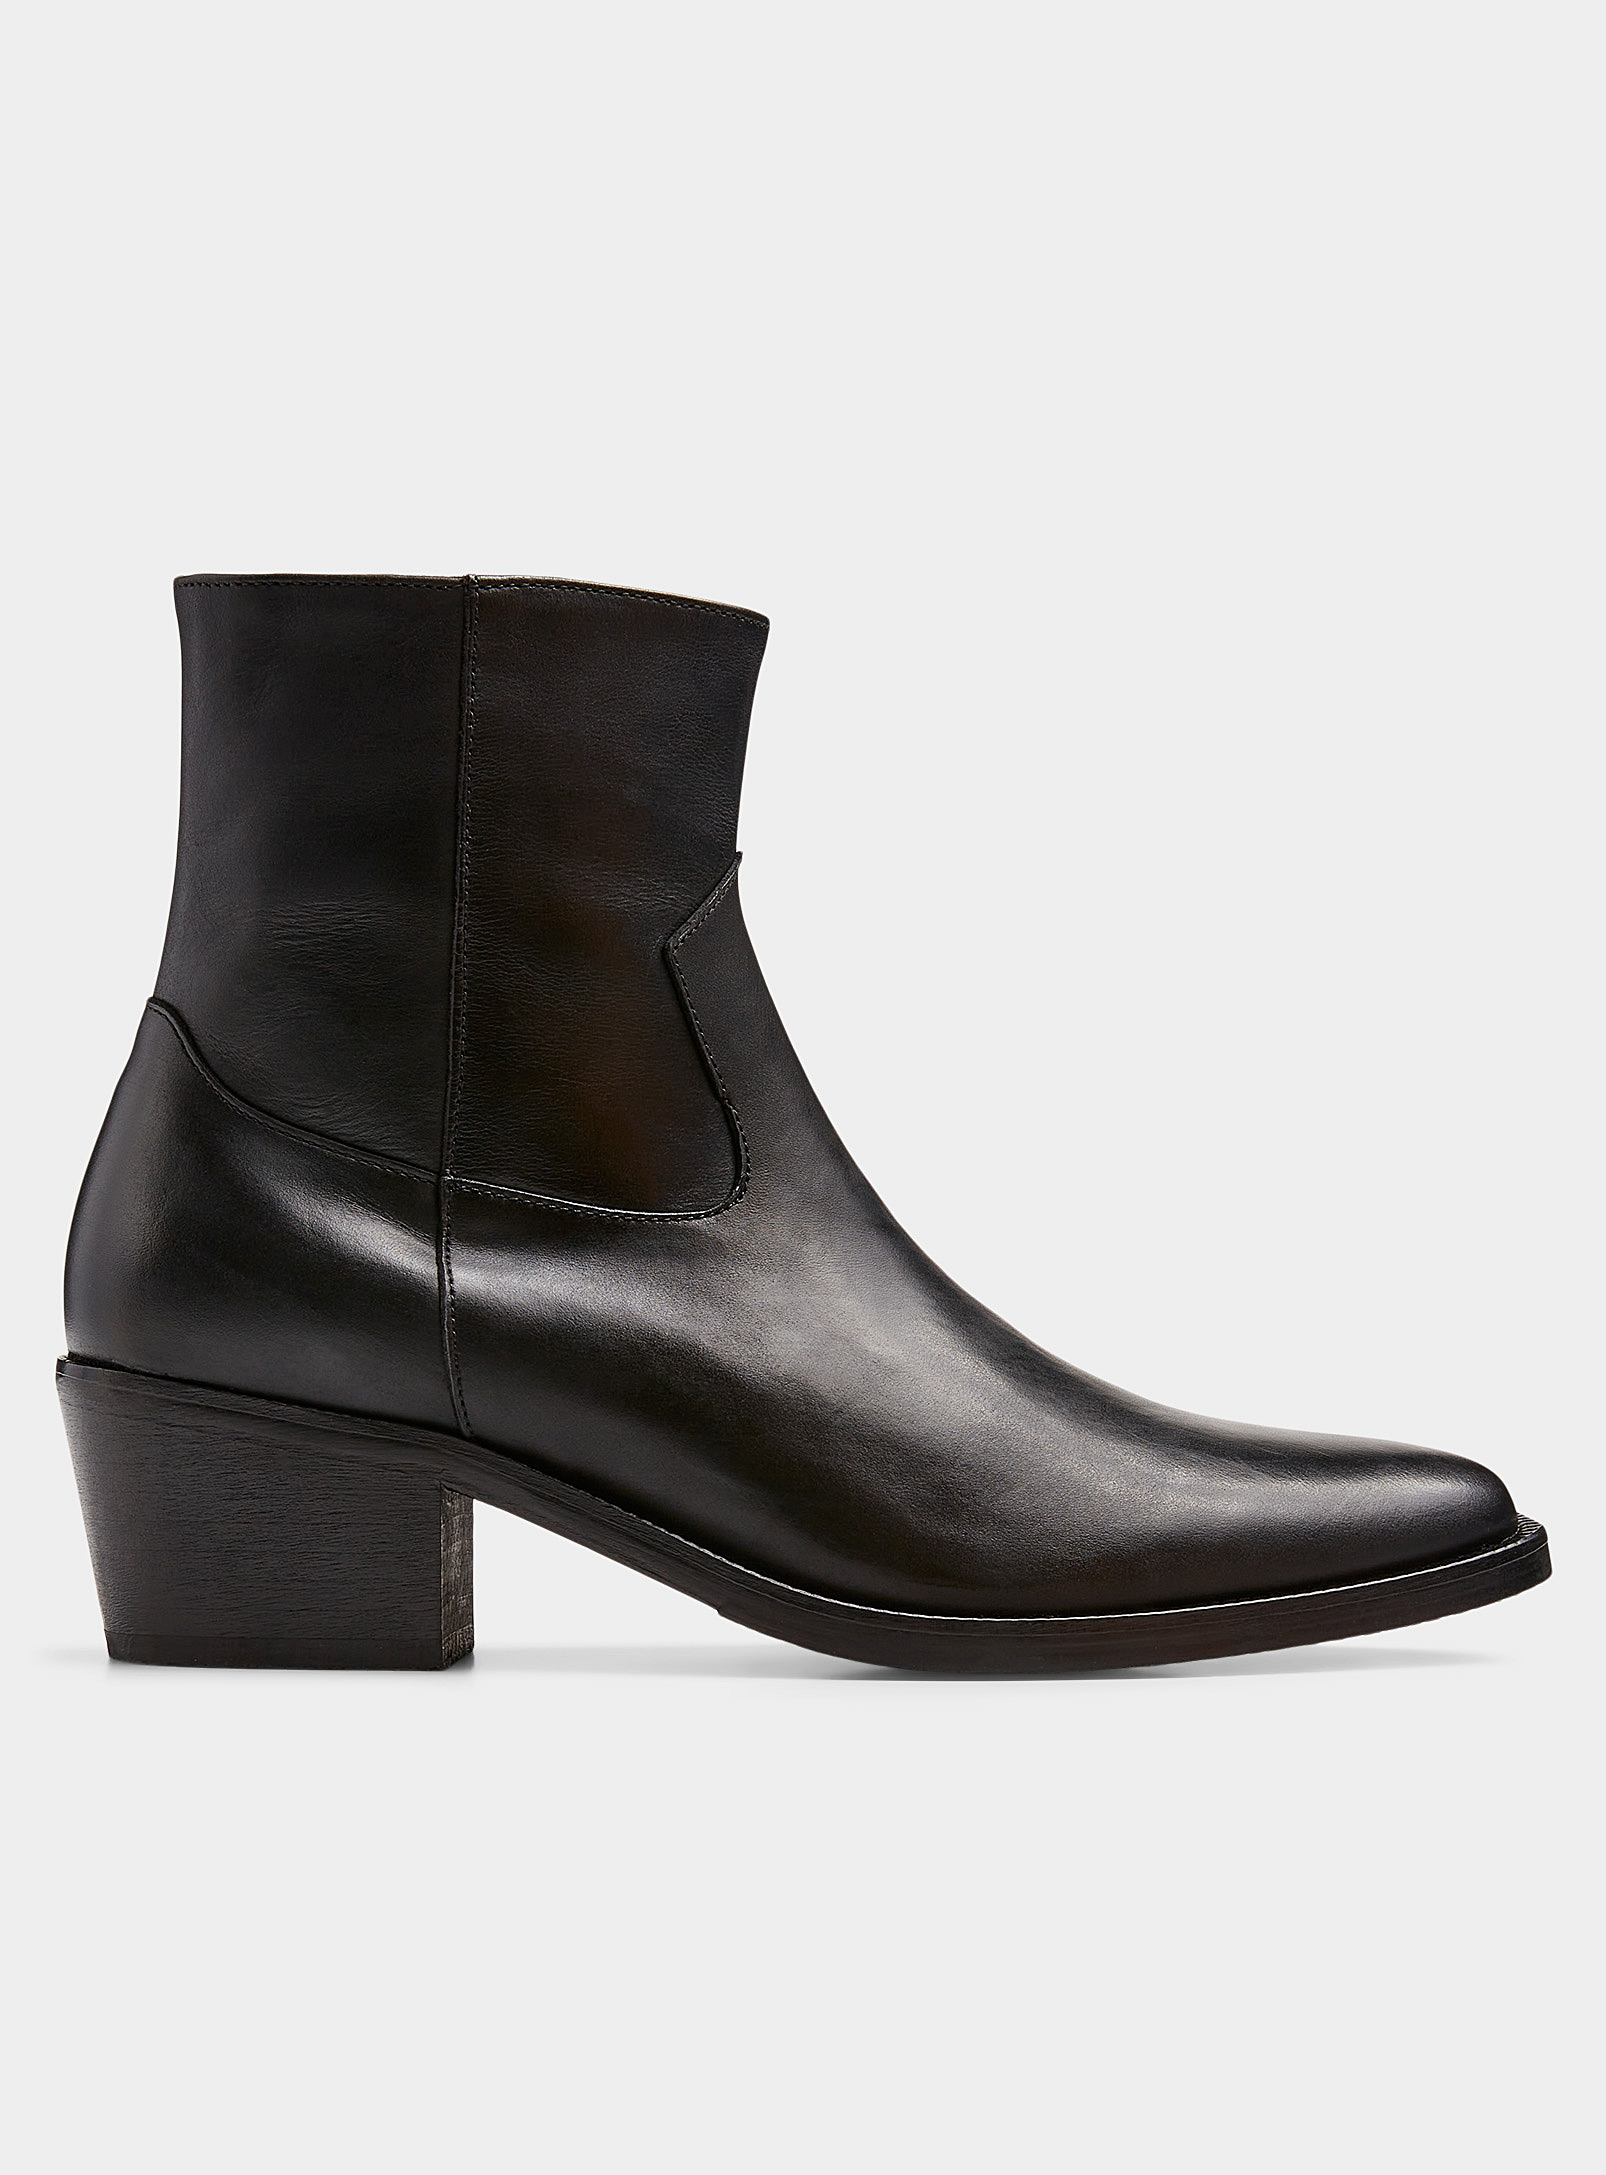 Le 31 - Men's Short leather Western boots Men